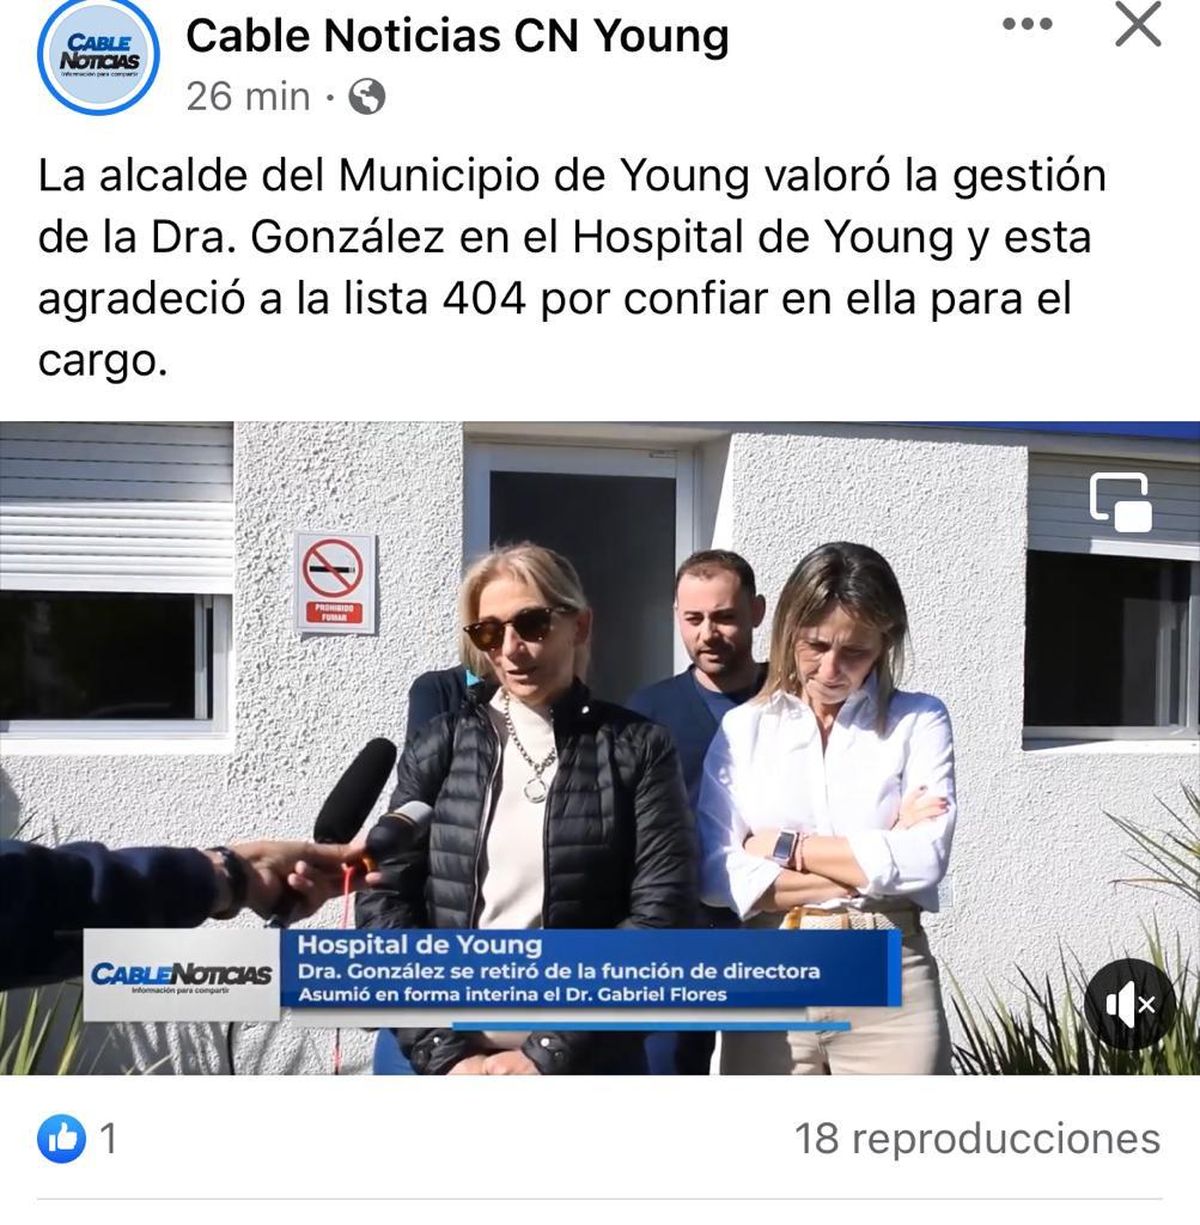 Ex directora del hospital de Young agradece confianza de la lista 404 (Foto Cable Noticias Young)